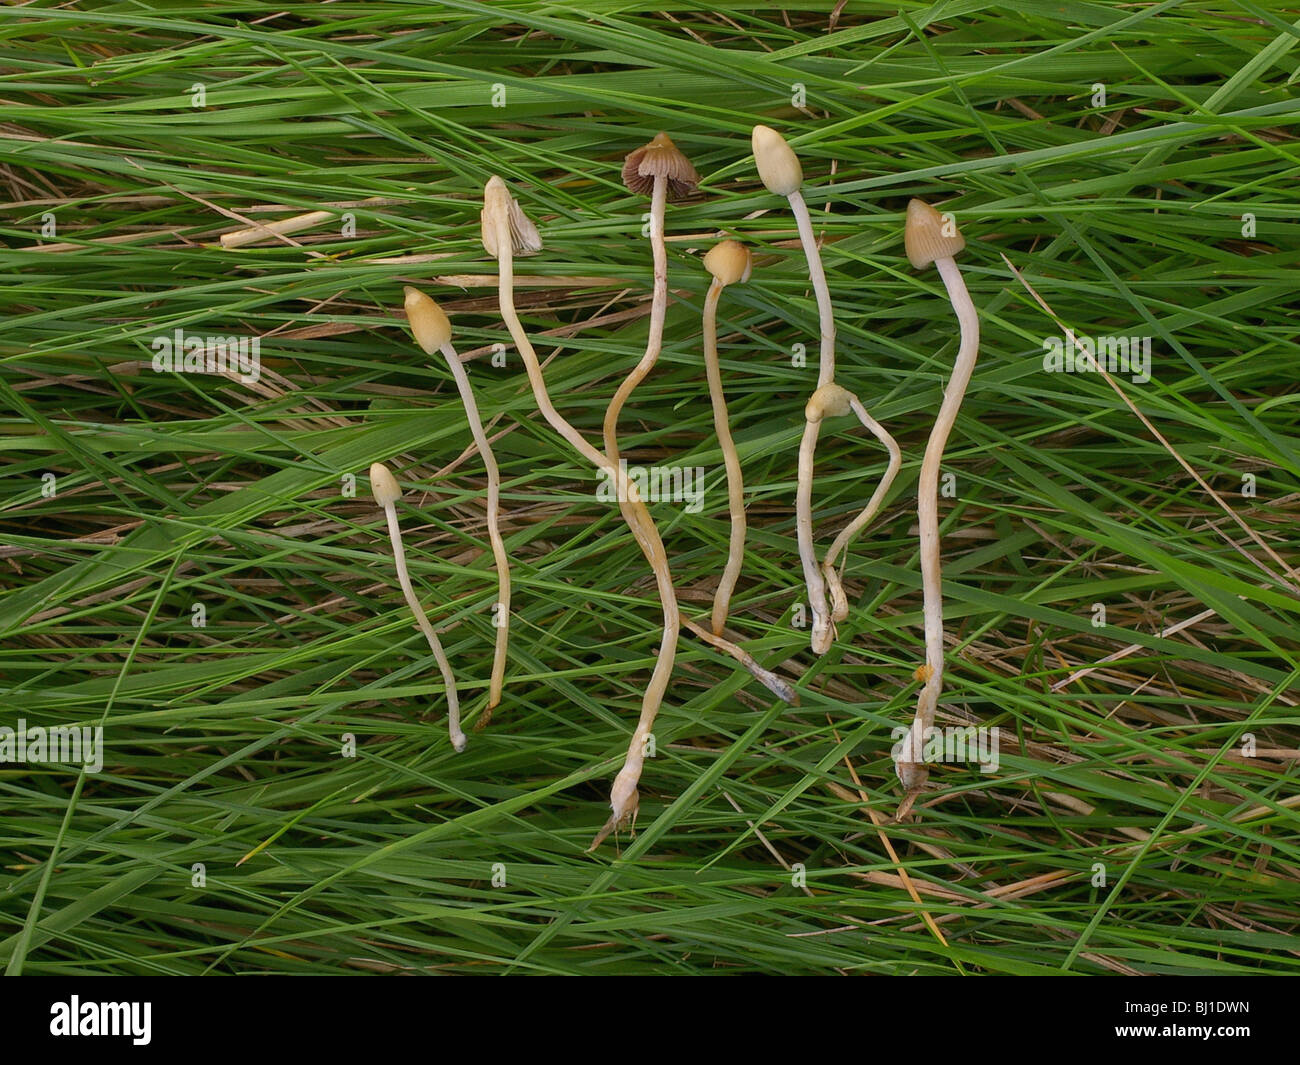 Magic mushroom (liberty cap) - Psilocybe semilanceata Stock Photo